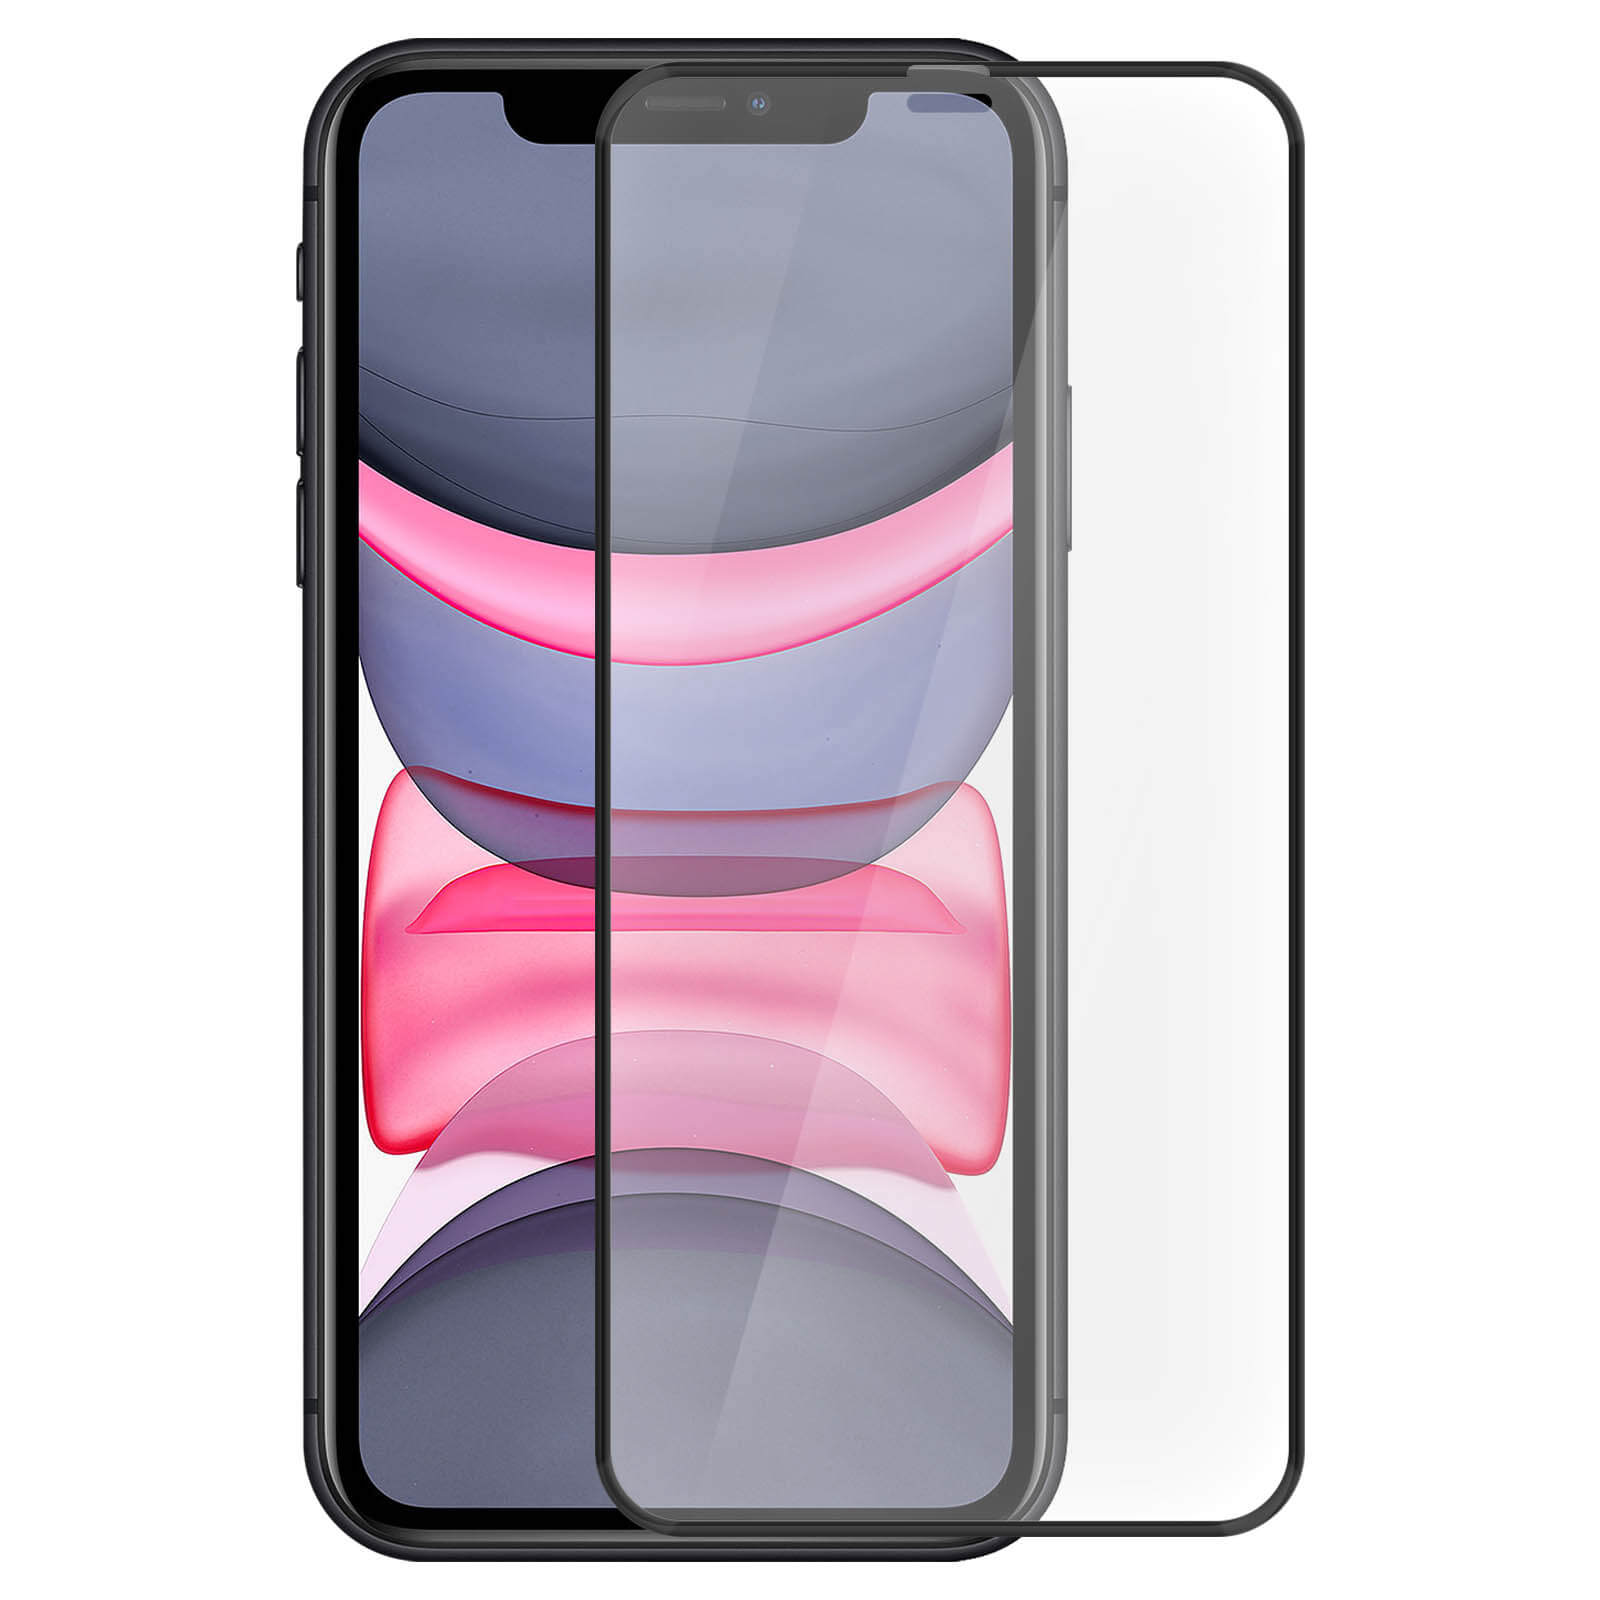 Película de vidrio templado - Iphone XS - Pantalla completa - Negro